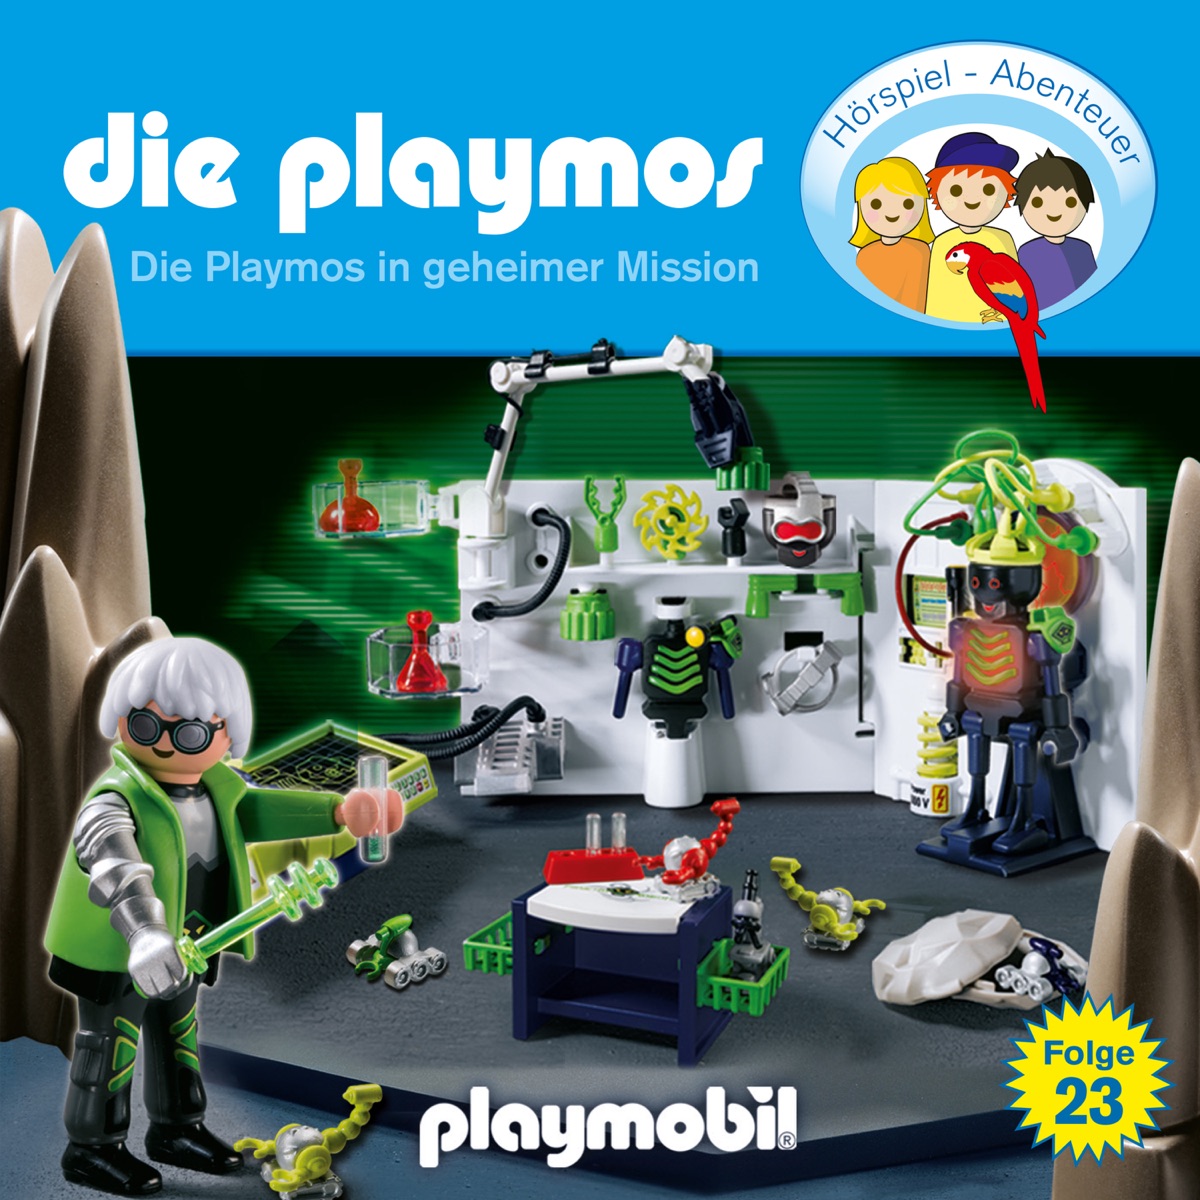 Folge 23: Die Playmos in geheimer Mission (Das Original Playmobil Hörspiel)  by Die Playmos on Apple Music